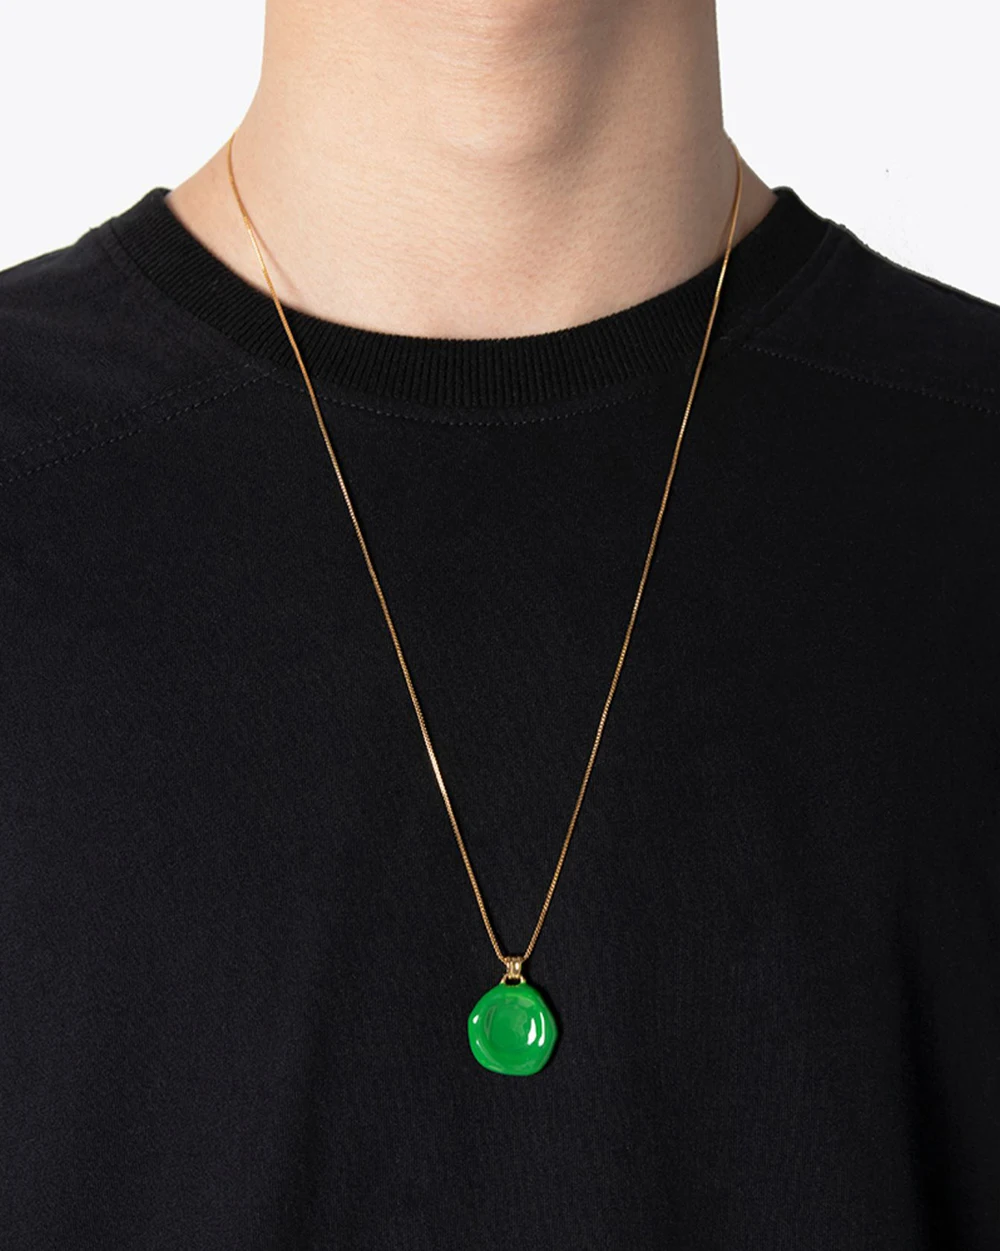 J11 Minimalist green enamel  geo pendant chain necklace for women ins runway jewelry